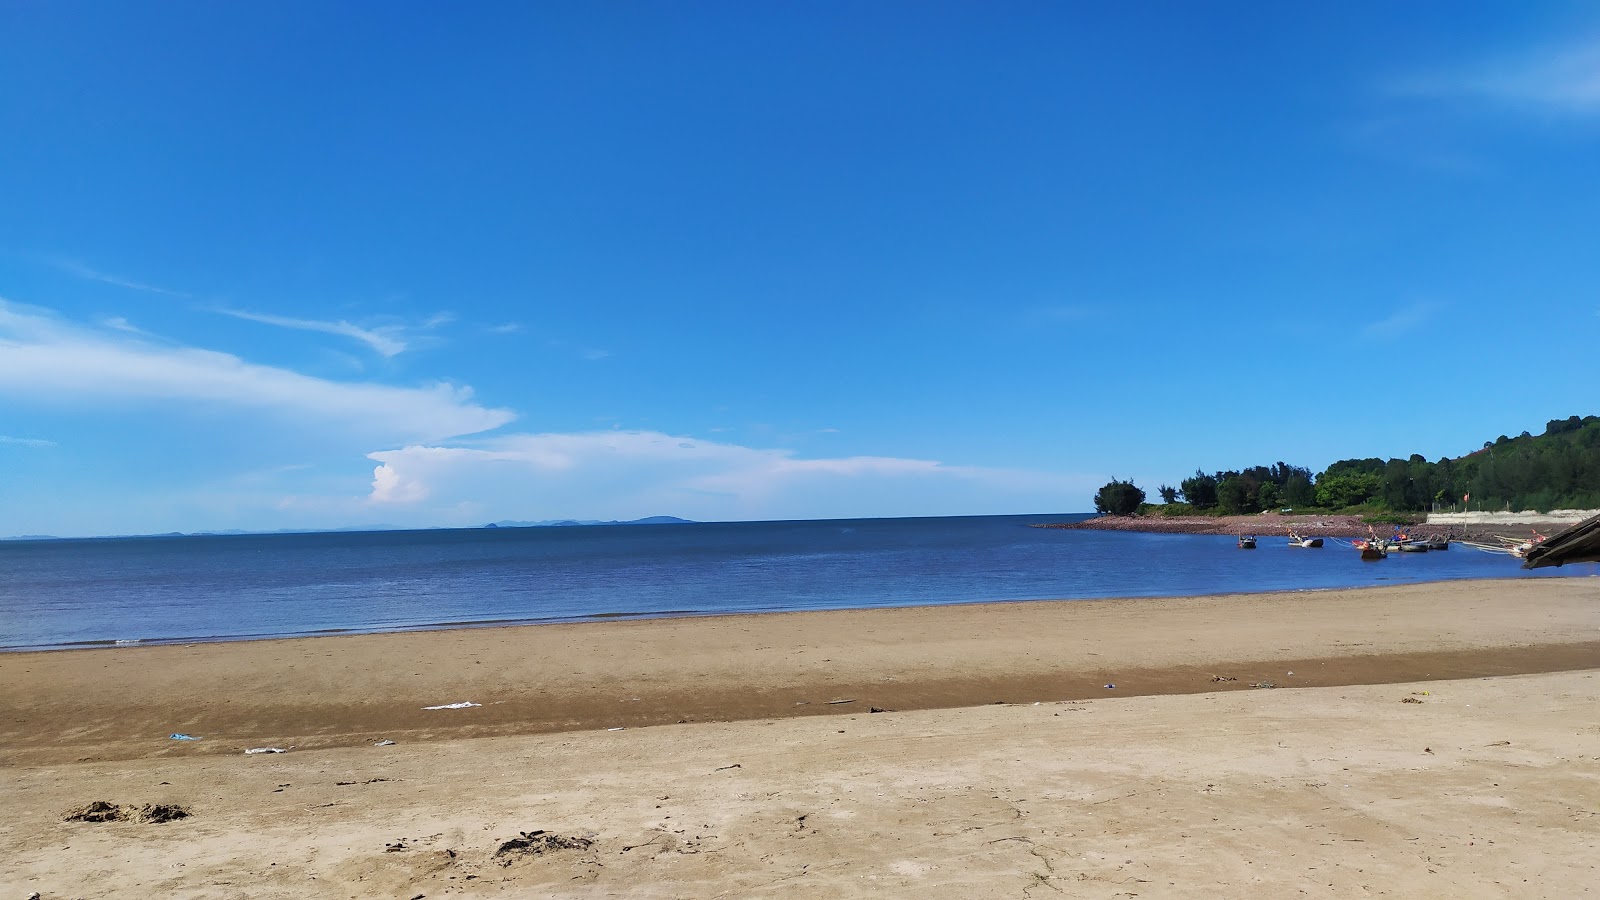 Zdjęcie Cua Hien Beach - popularne miejsce wśród znawców relaksu